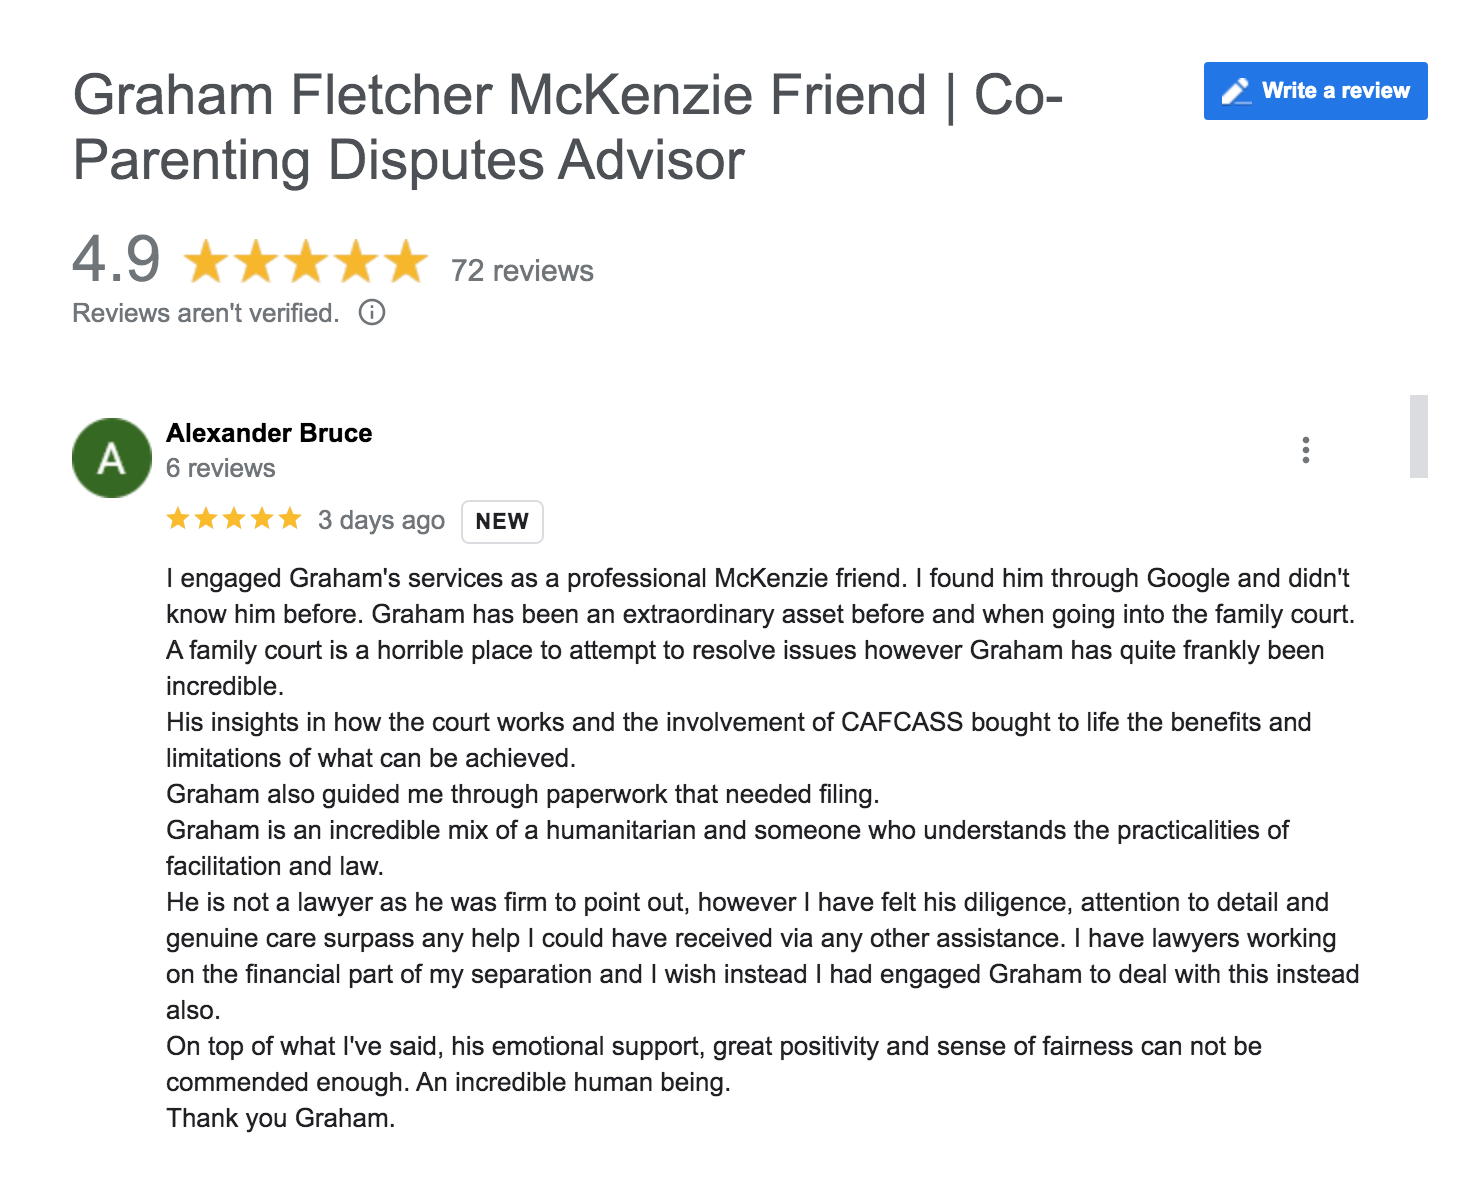 5 star McKenzie Friend review left on google by a client of Graham Fletcher McKenzie Friend 